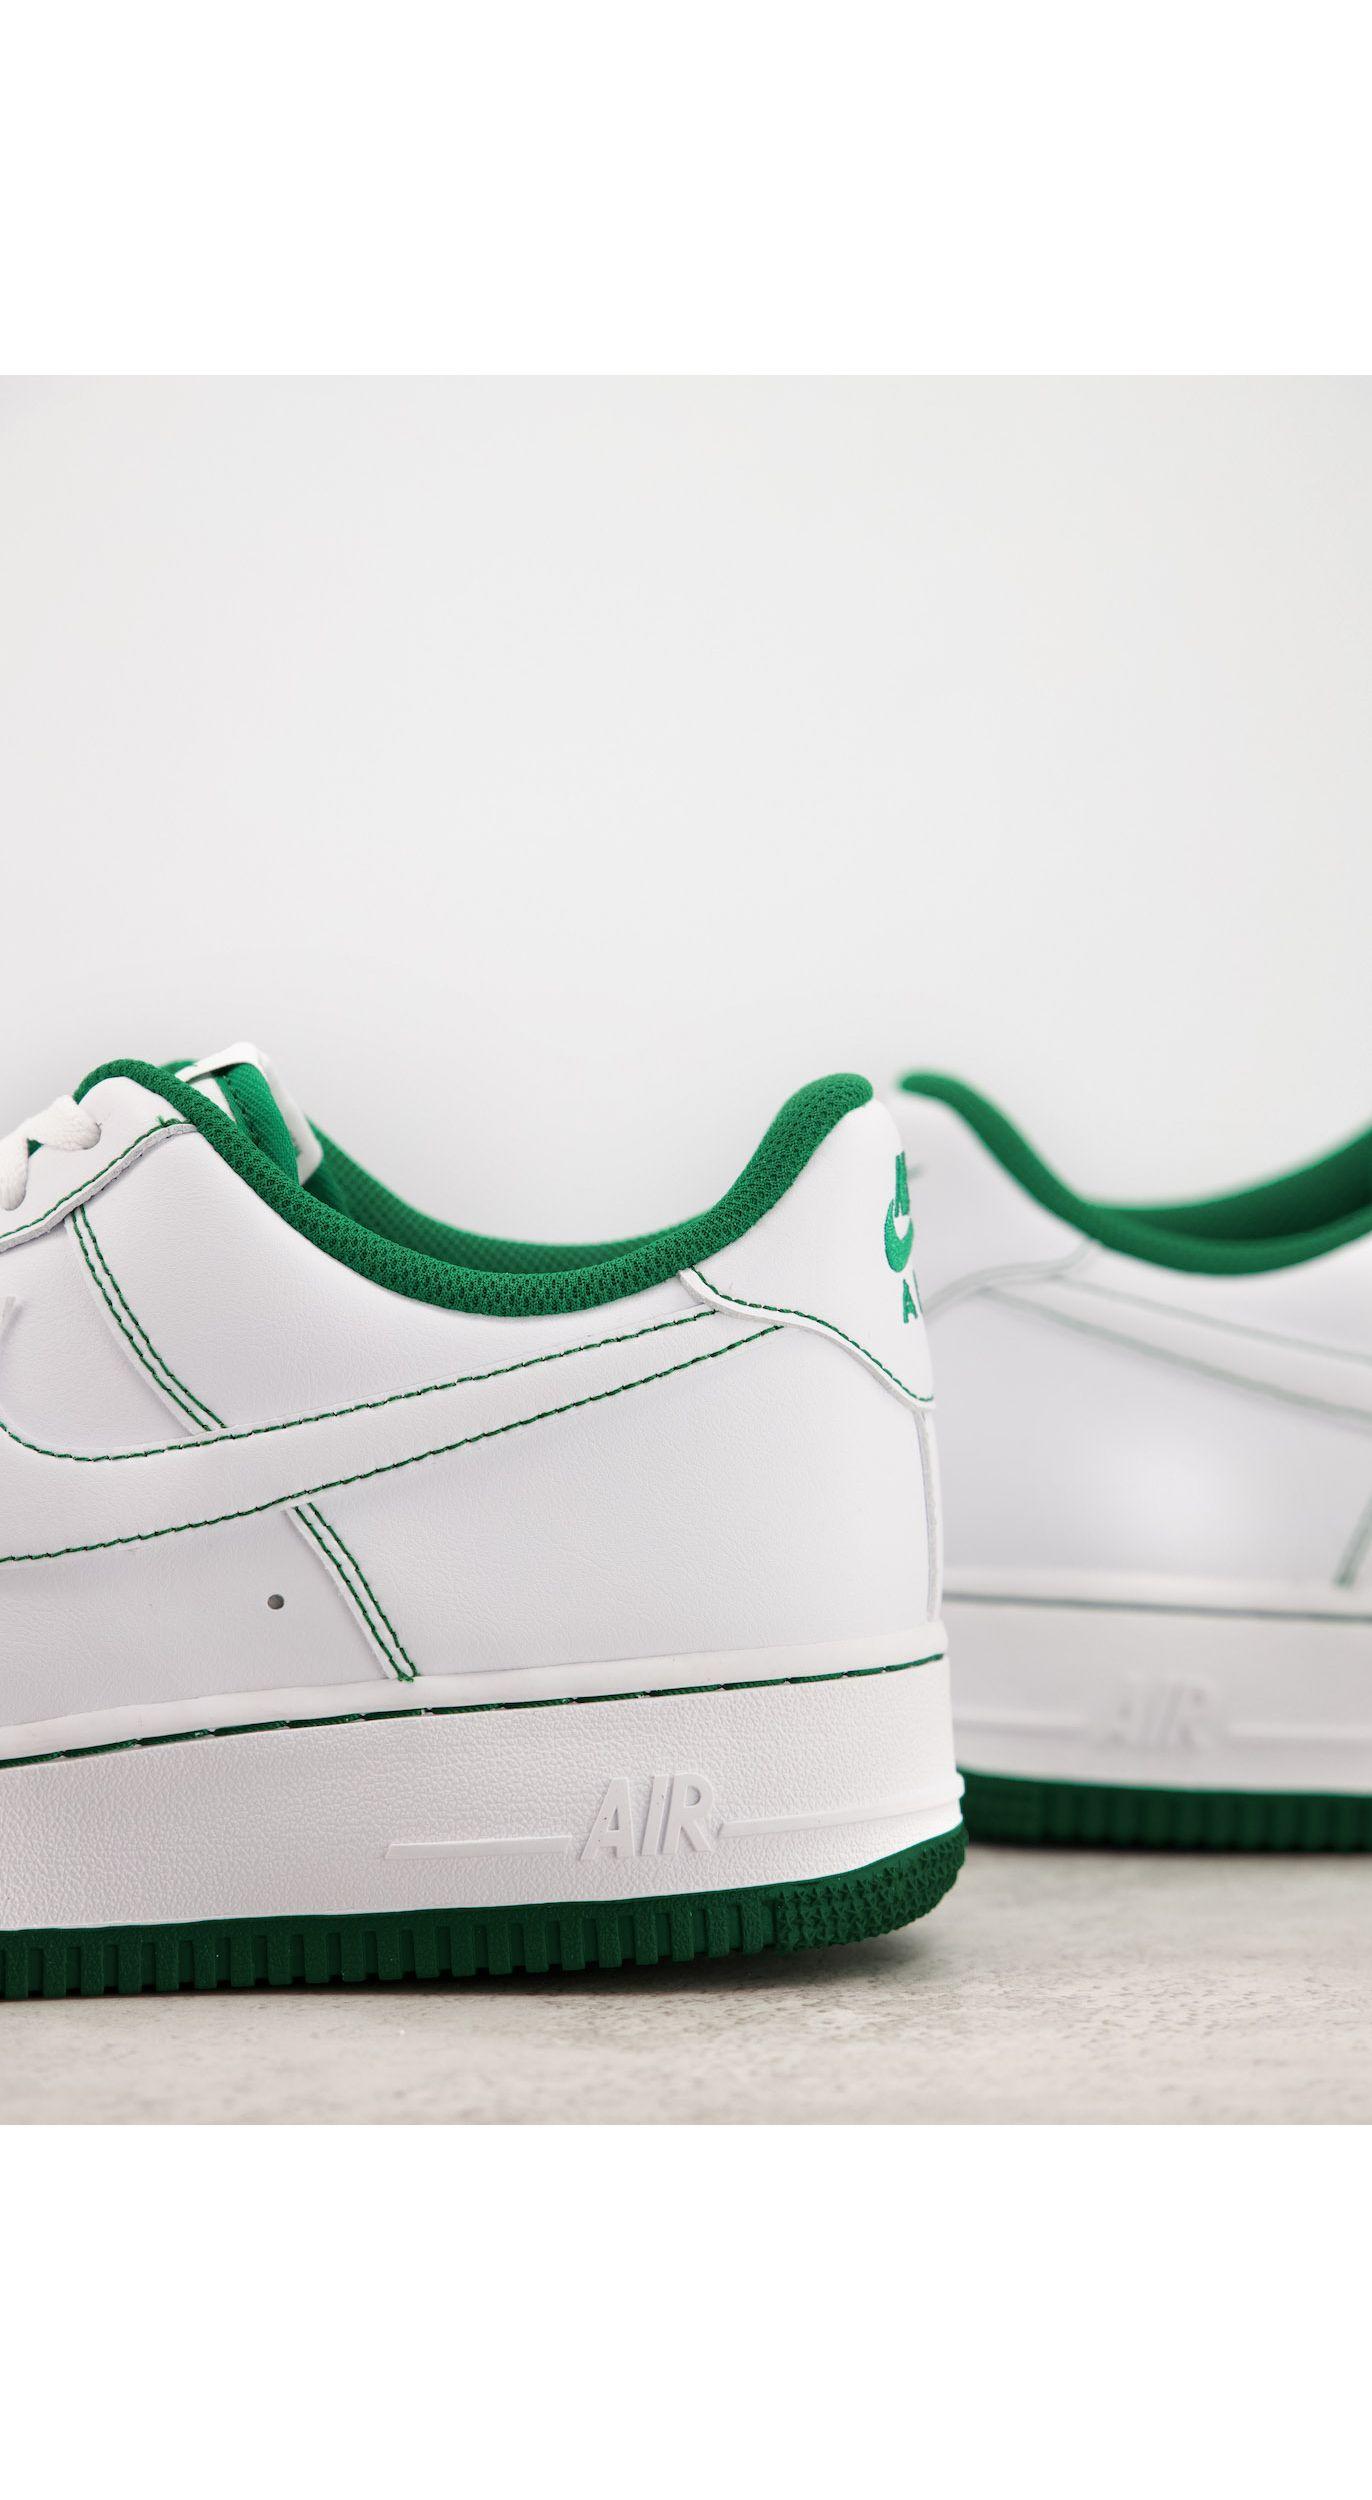 Zapatillas blancas y verde pino air force 1 '07 stitch Nike de hombre de  color Blanco | Lyst